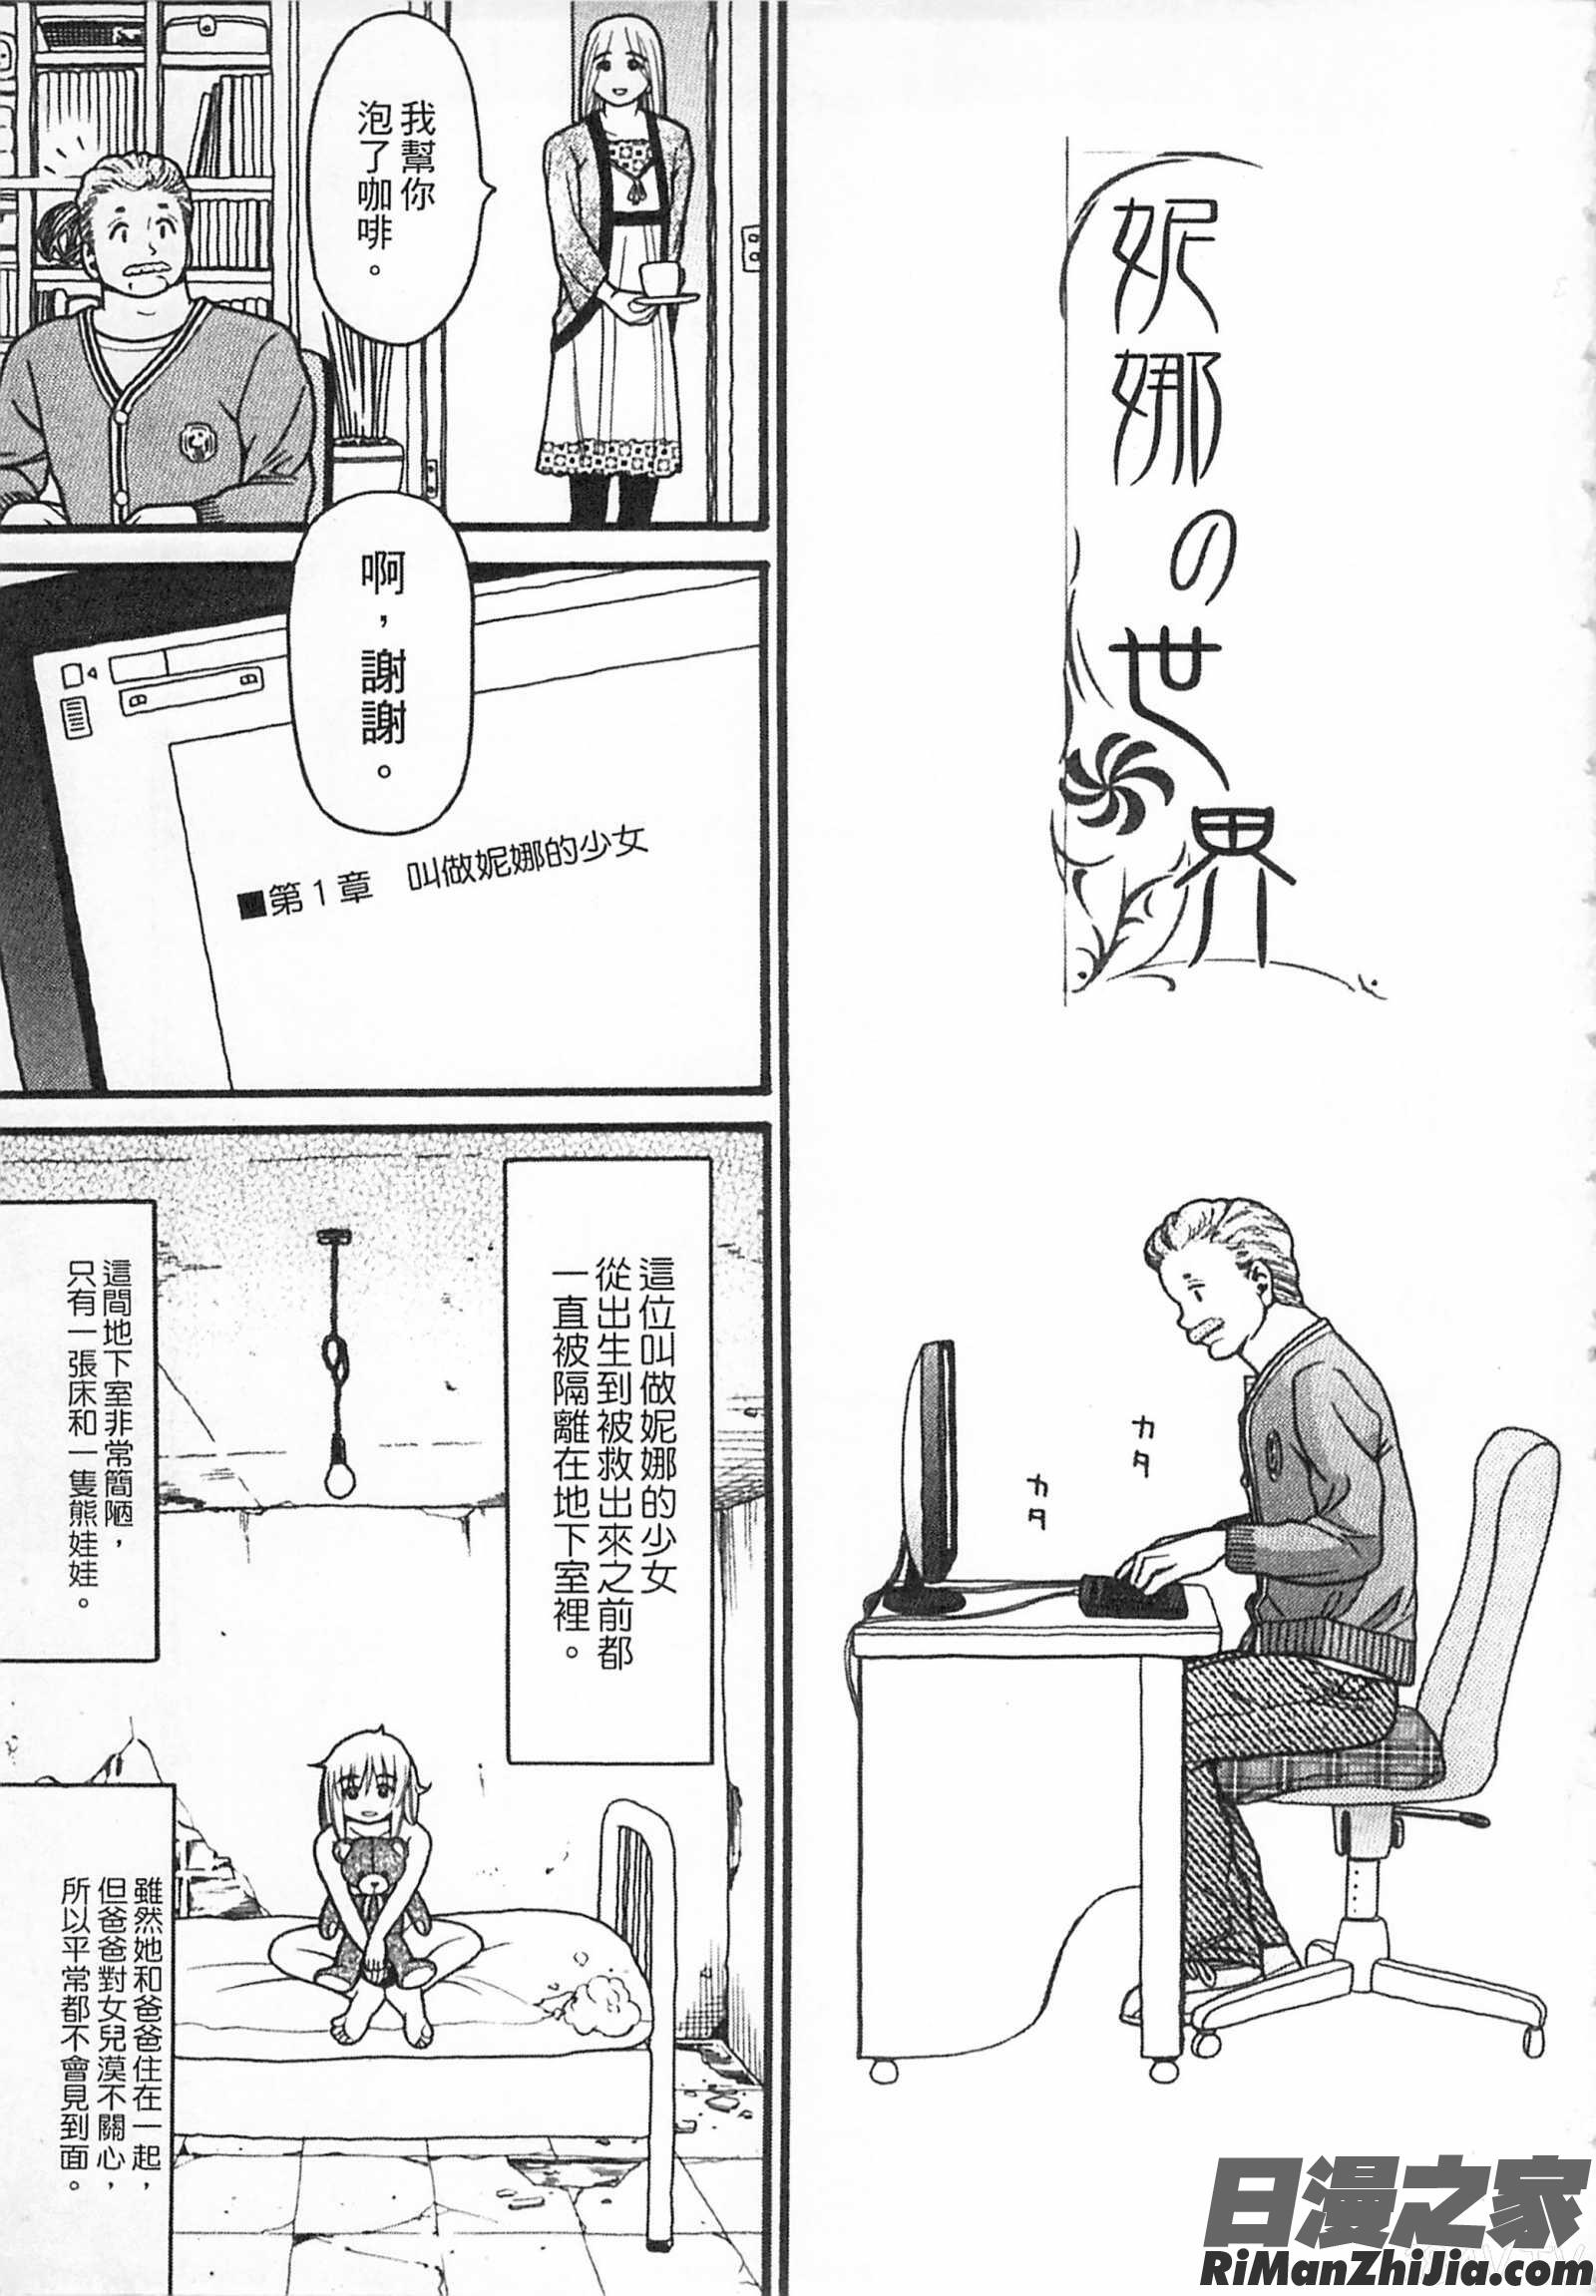 しょとうぶ初等部漫画 免费阅读 整部漫画 11.jpg